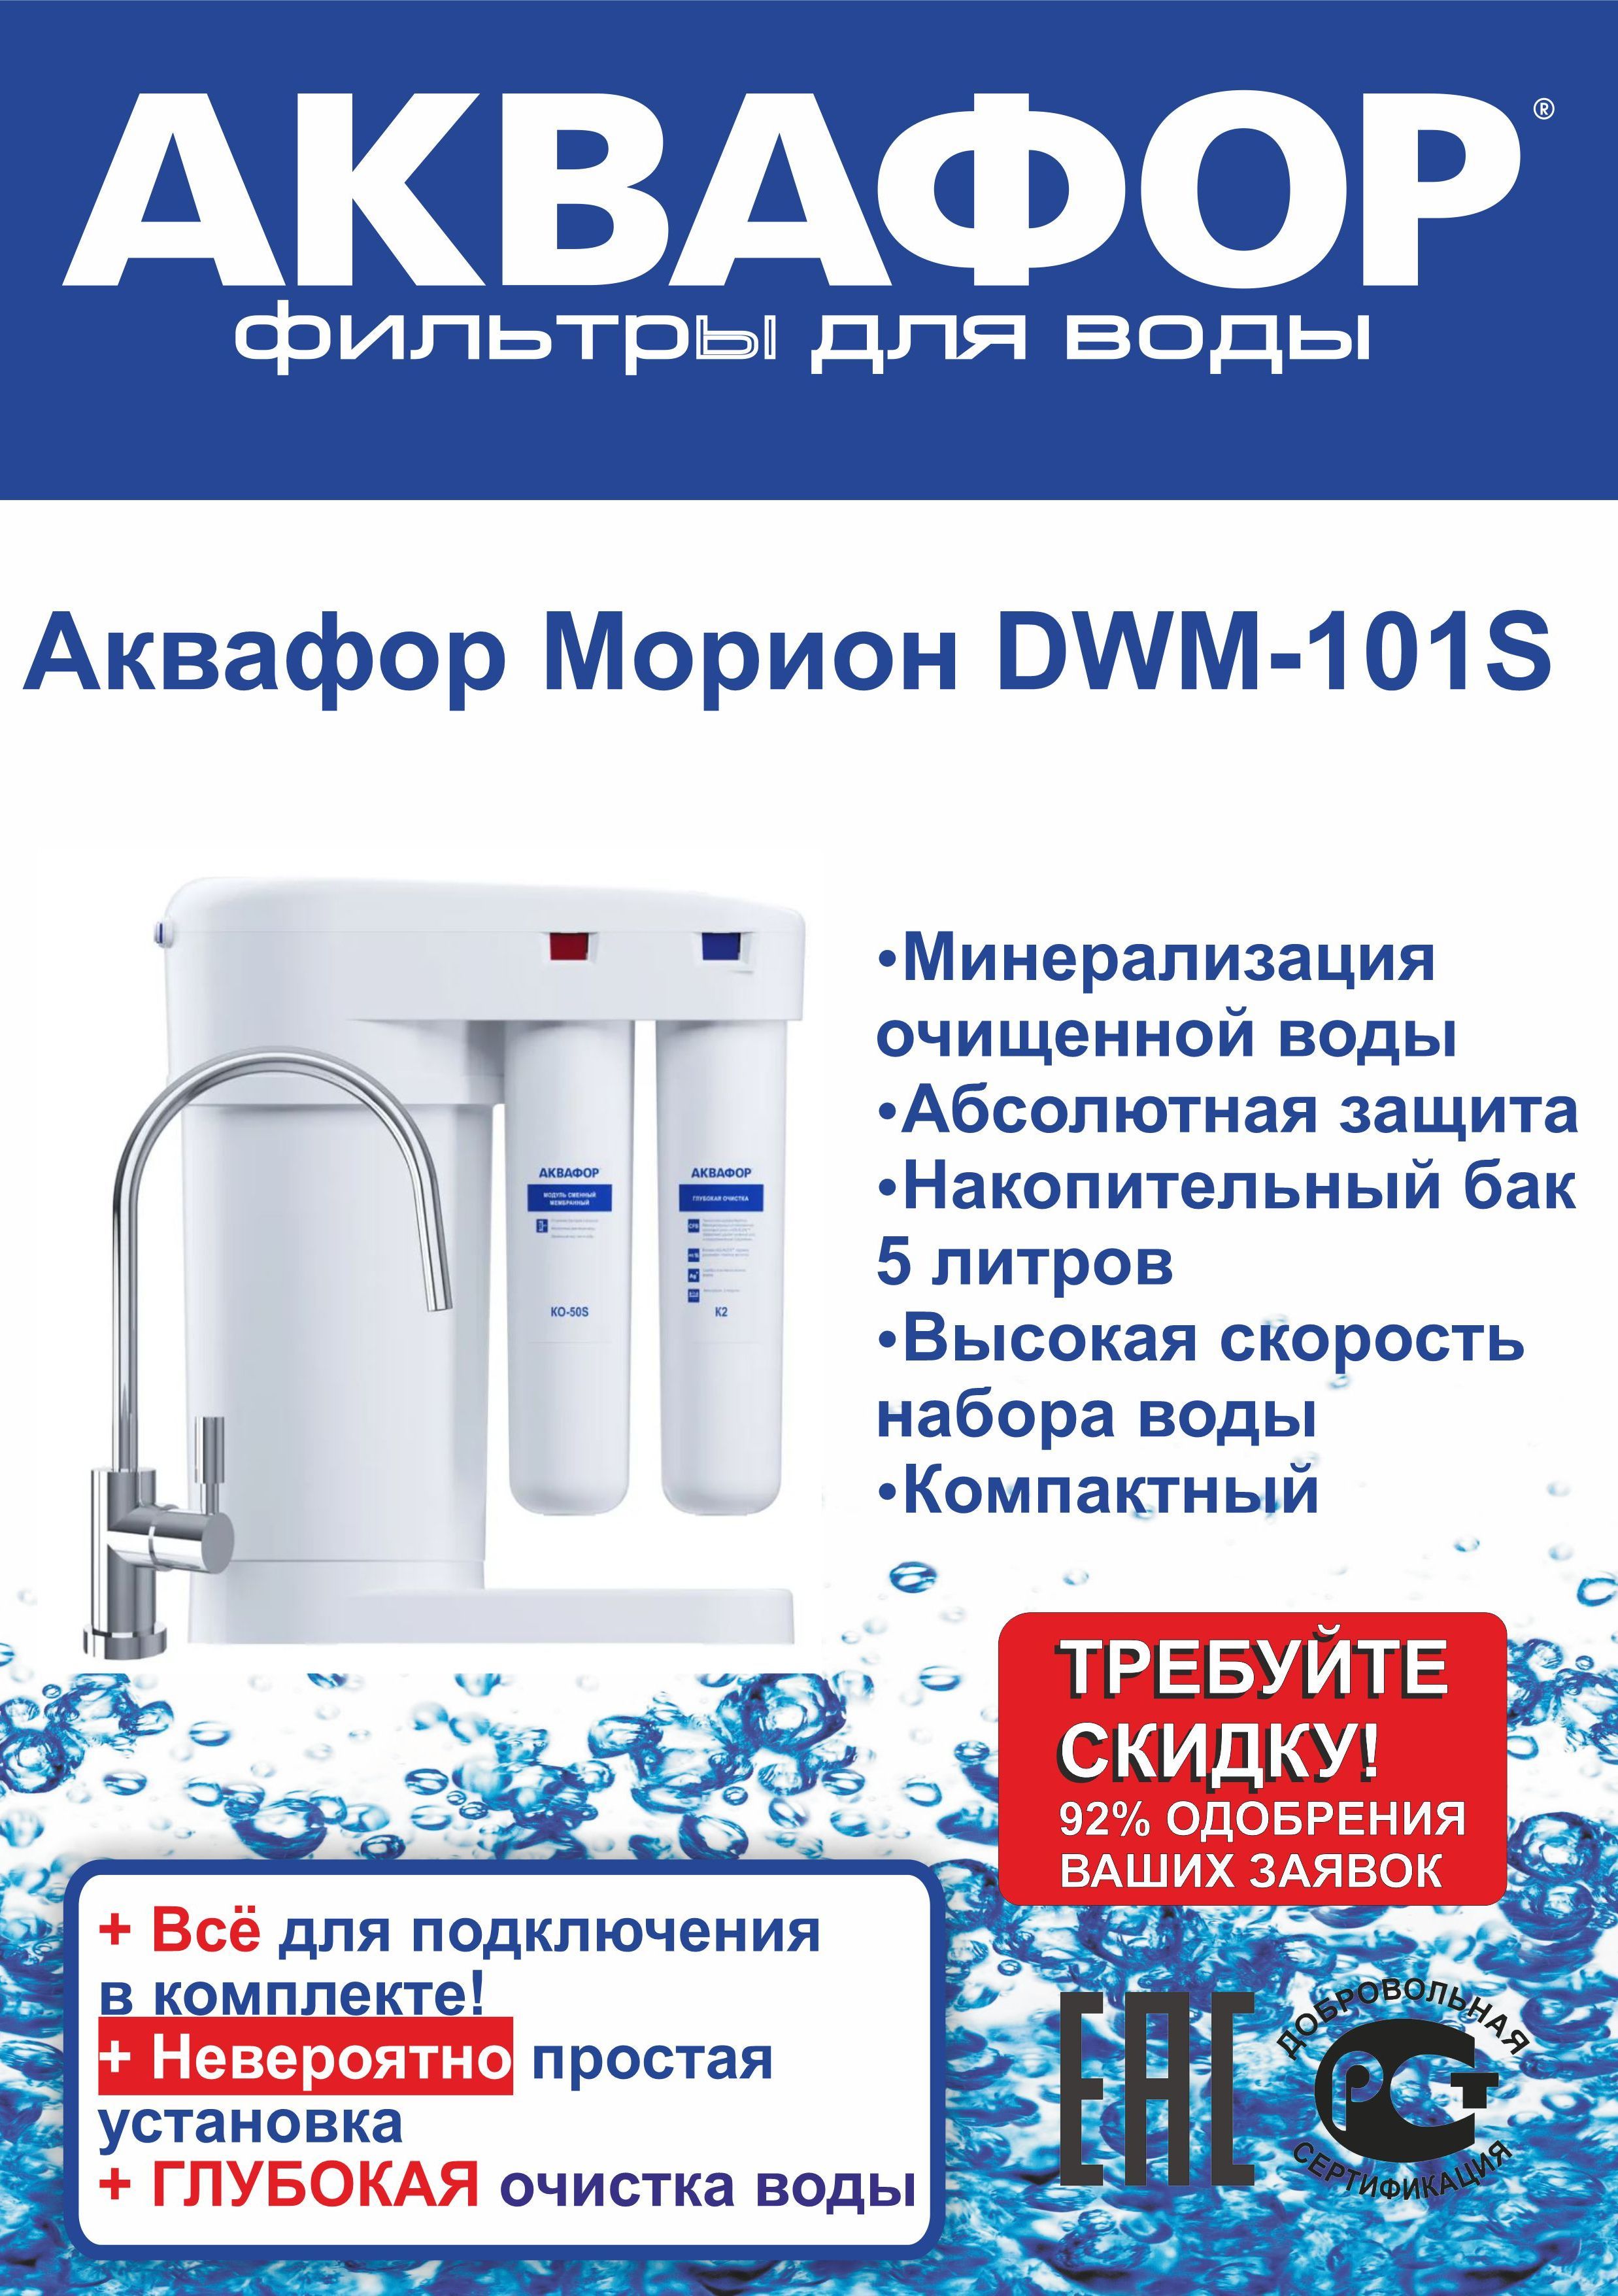 Автомат аквафор питьевой воды морион dwm 101s. Аквафор DWM-101s Морион. DWM-101s. DWM 101 Морион. Аквафор Марион 101s упаковка.